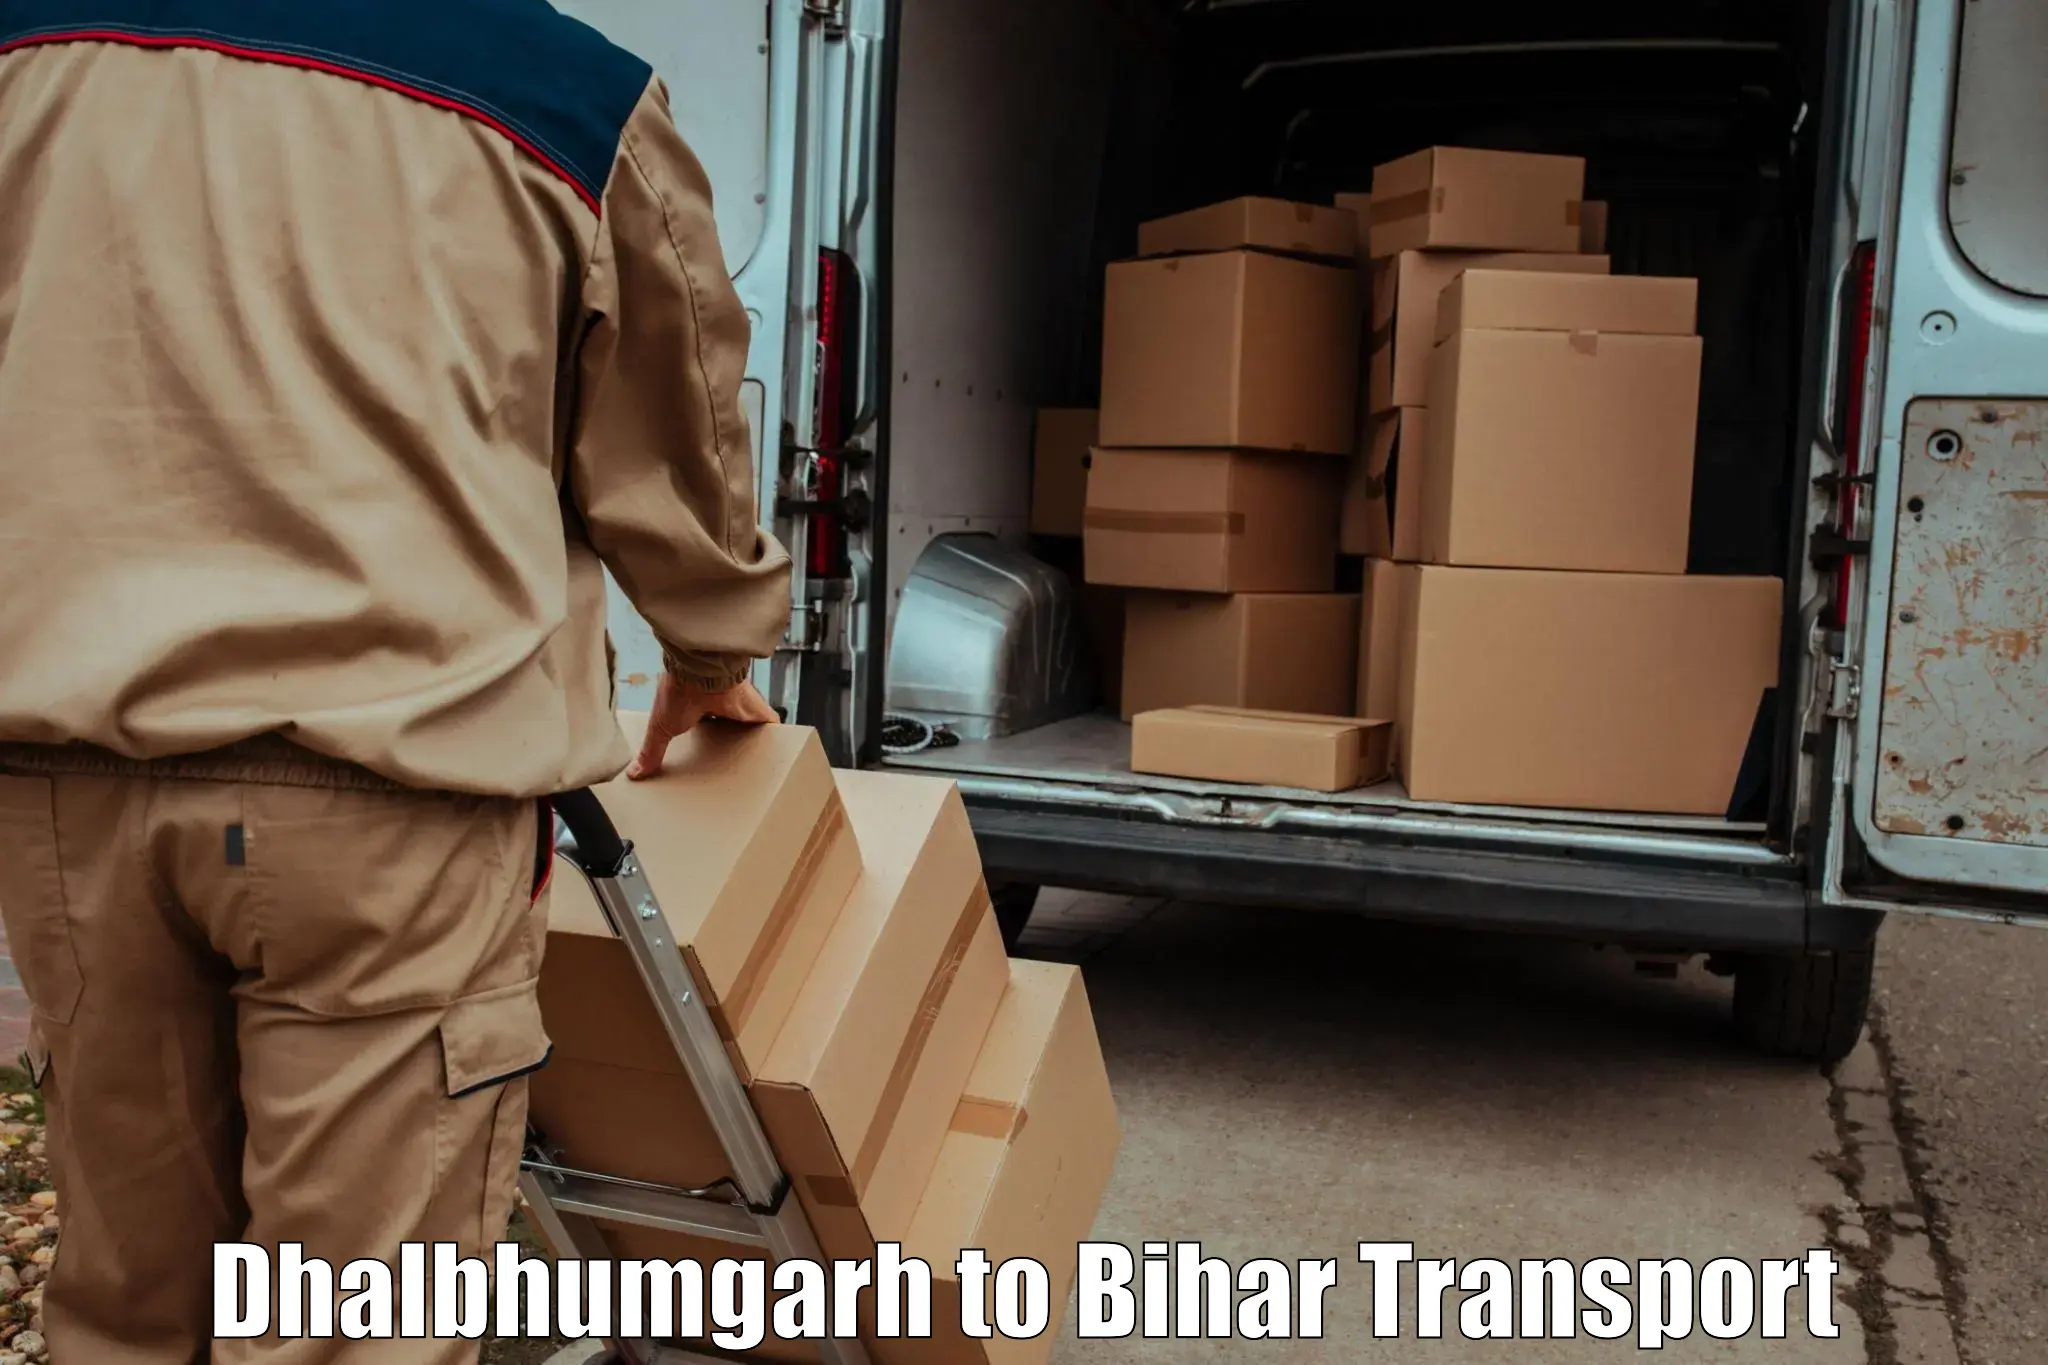 Truck transport companies in India Dhalbhumgarh to Bihar